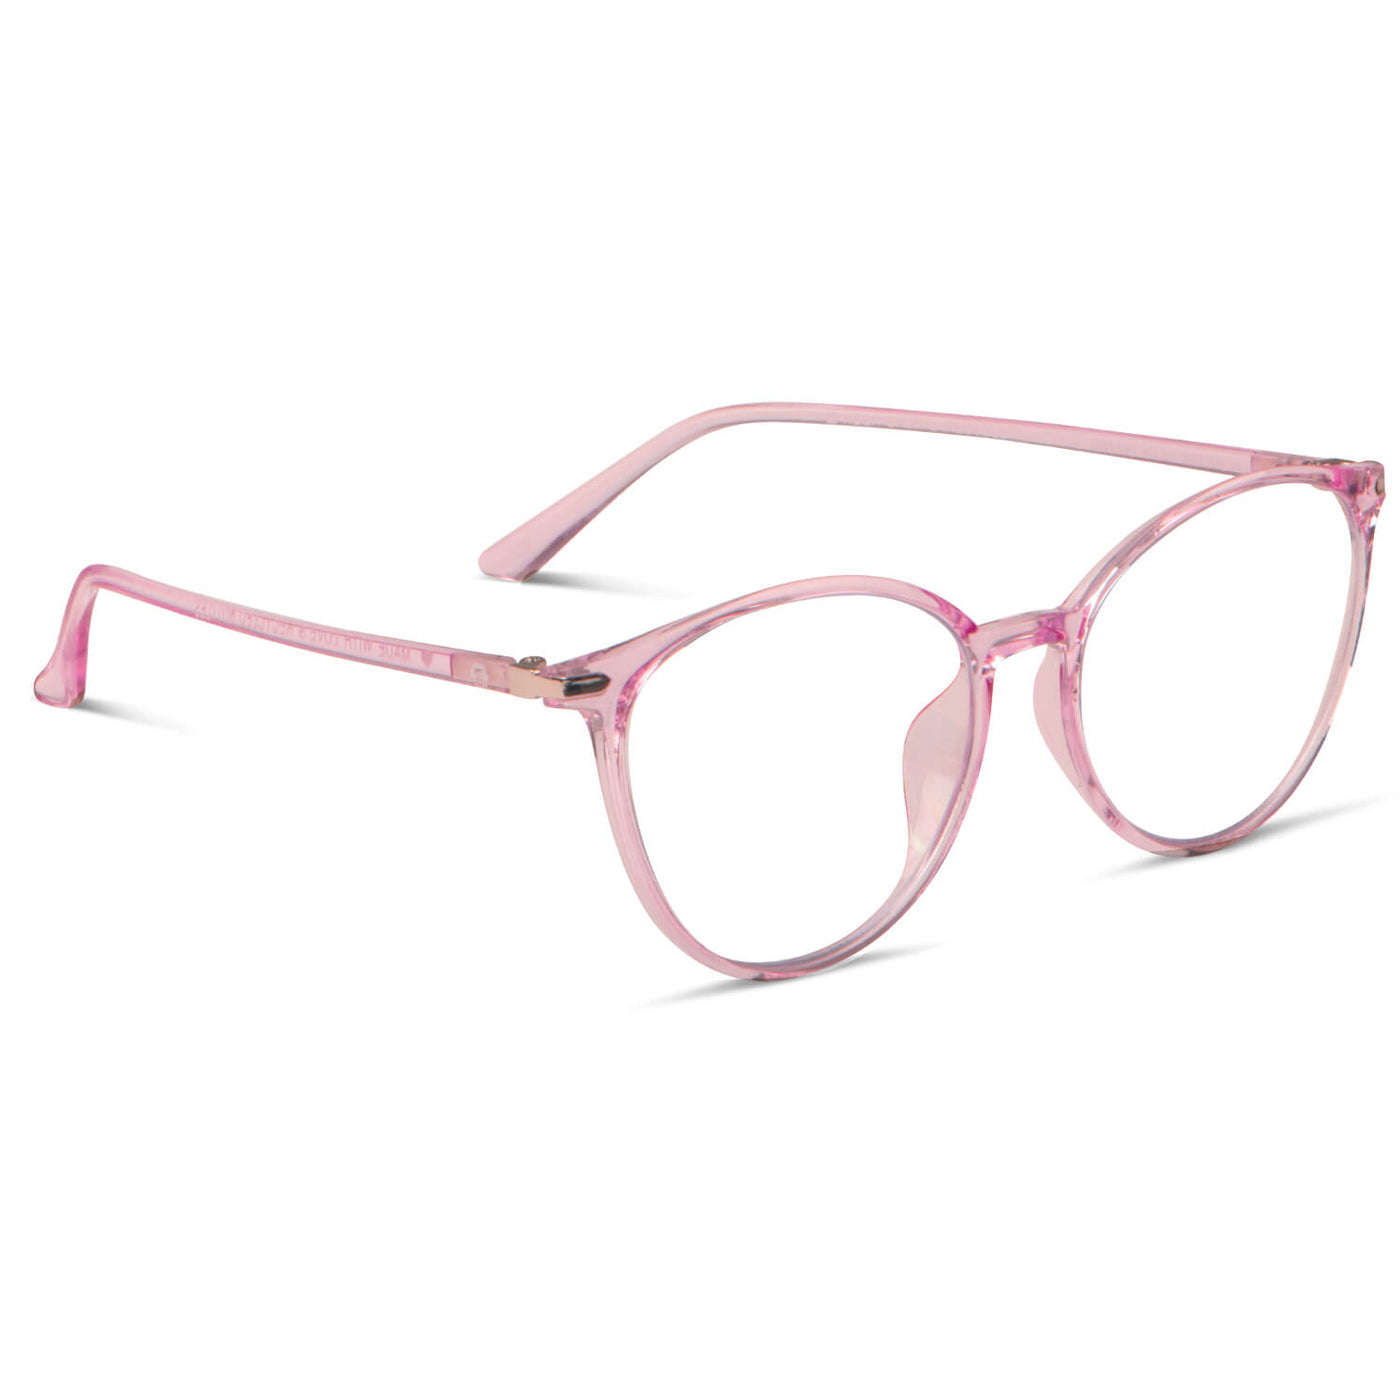 anteojos de lectura agatados de color rosado para mujer de cara redonda con antireflejo y filtro de luz azul